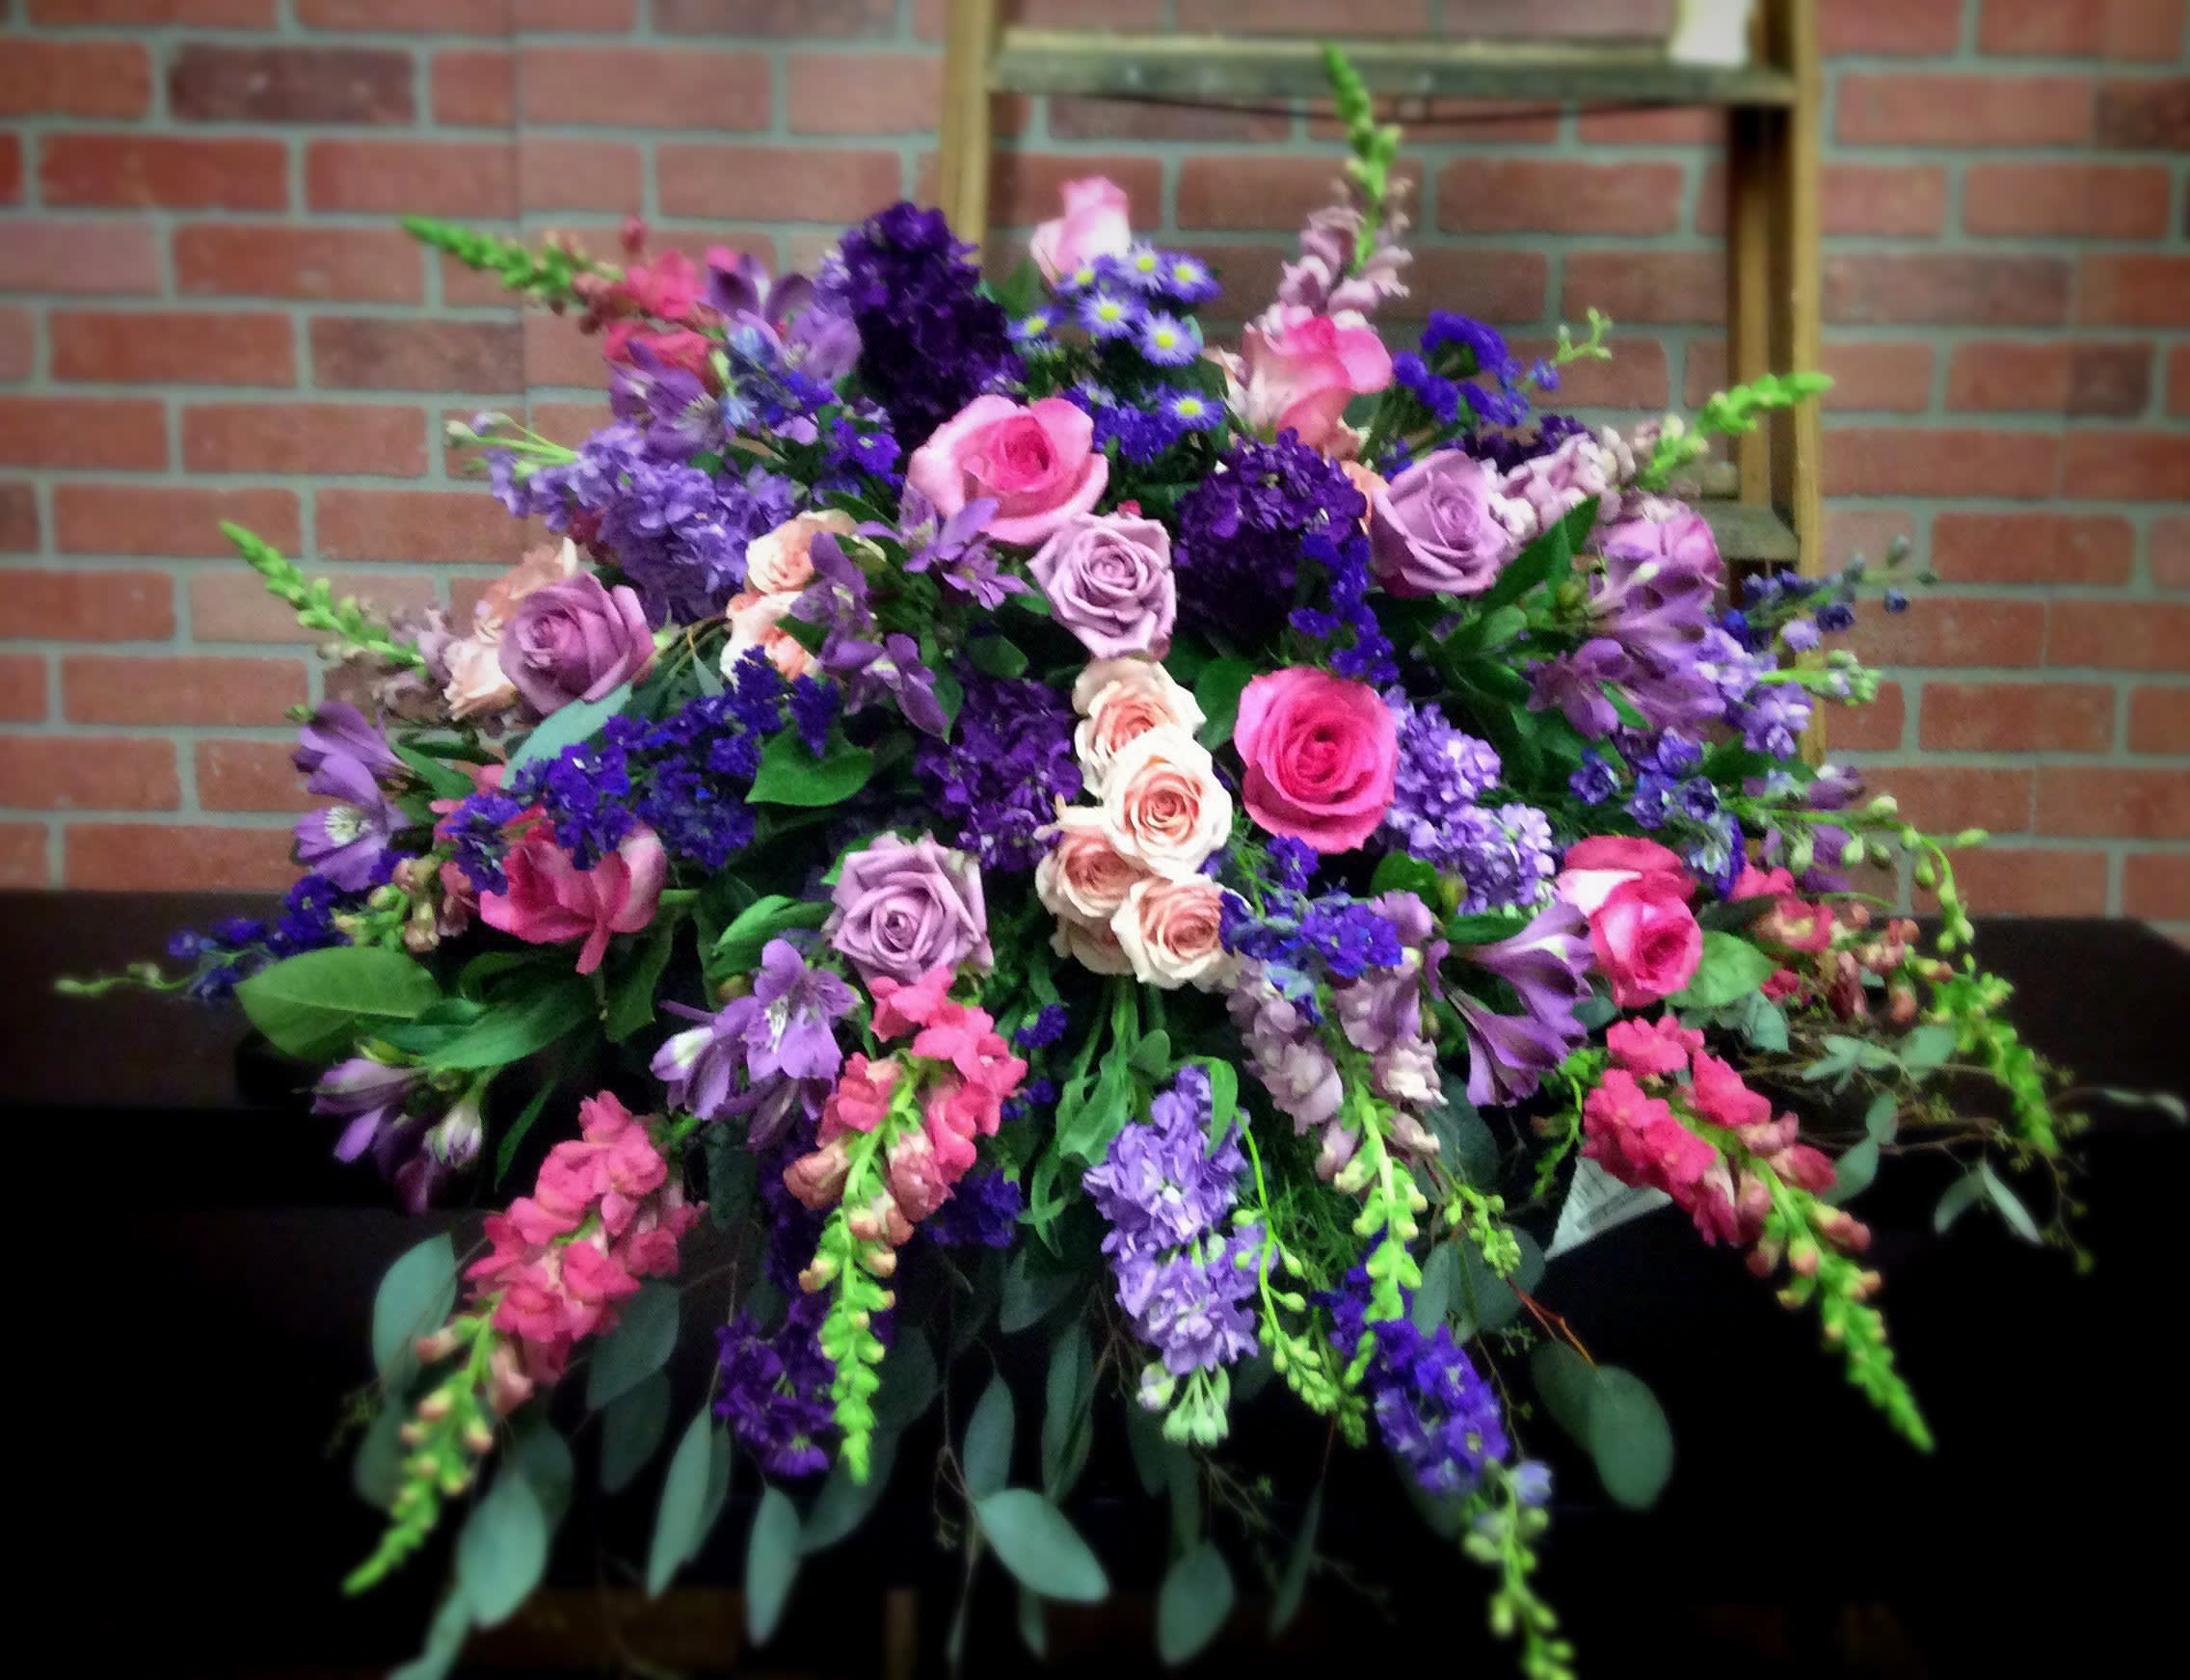 Lavender & Purple Funeral Flowers, Purple Funeral Spray